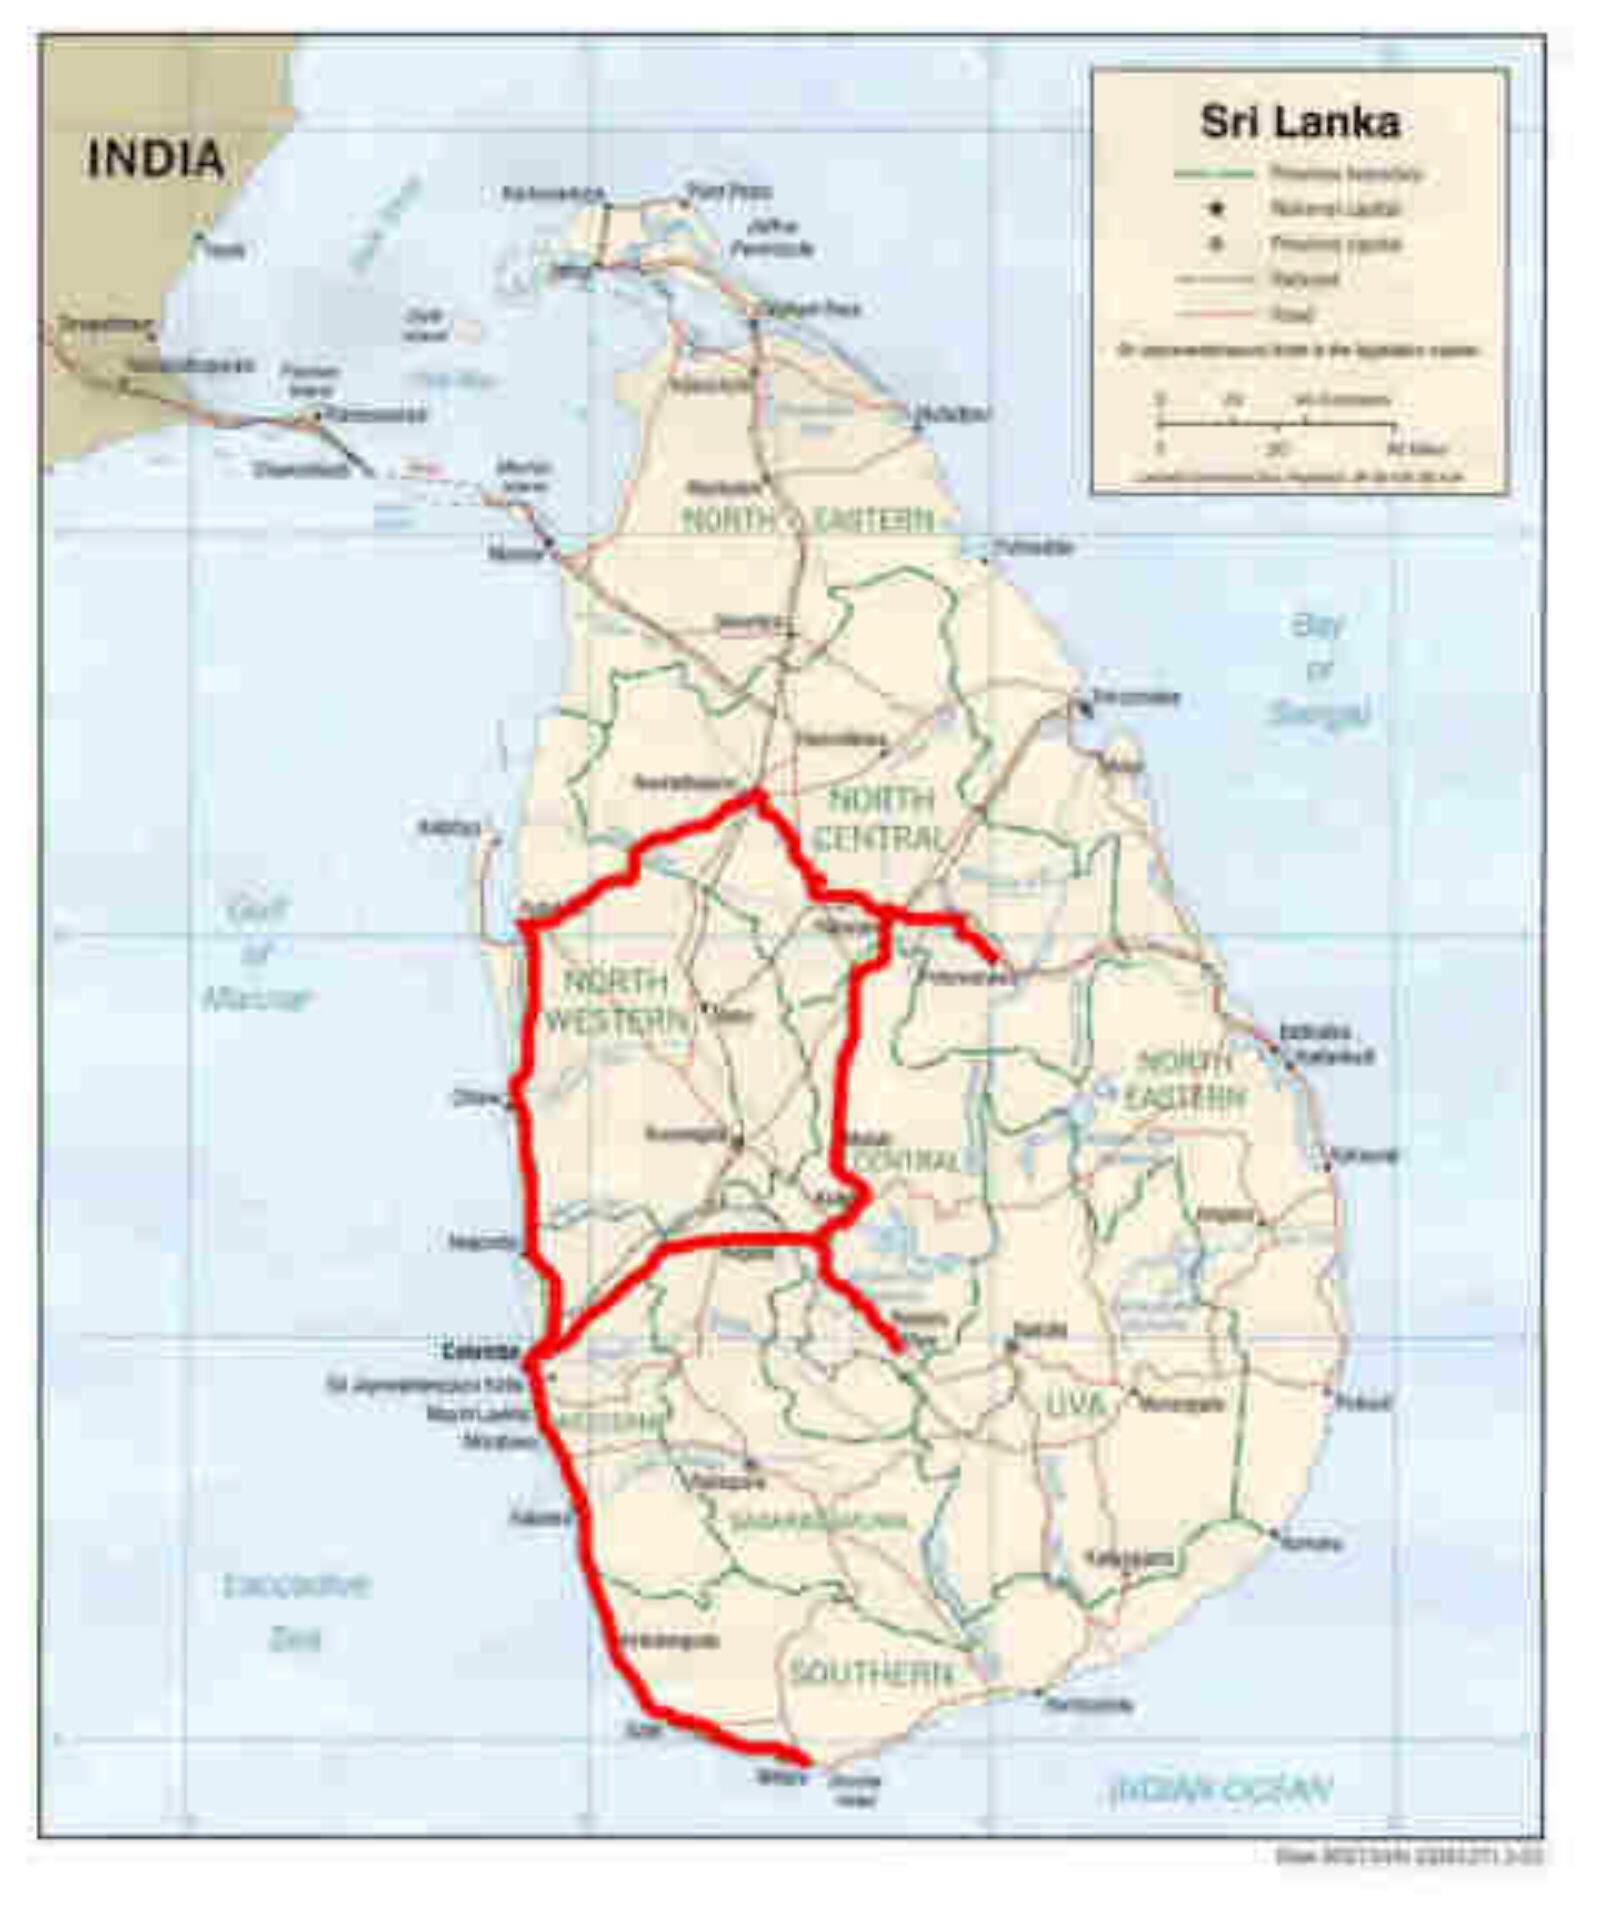 Our route around Sri Lanka